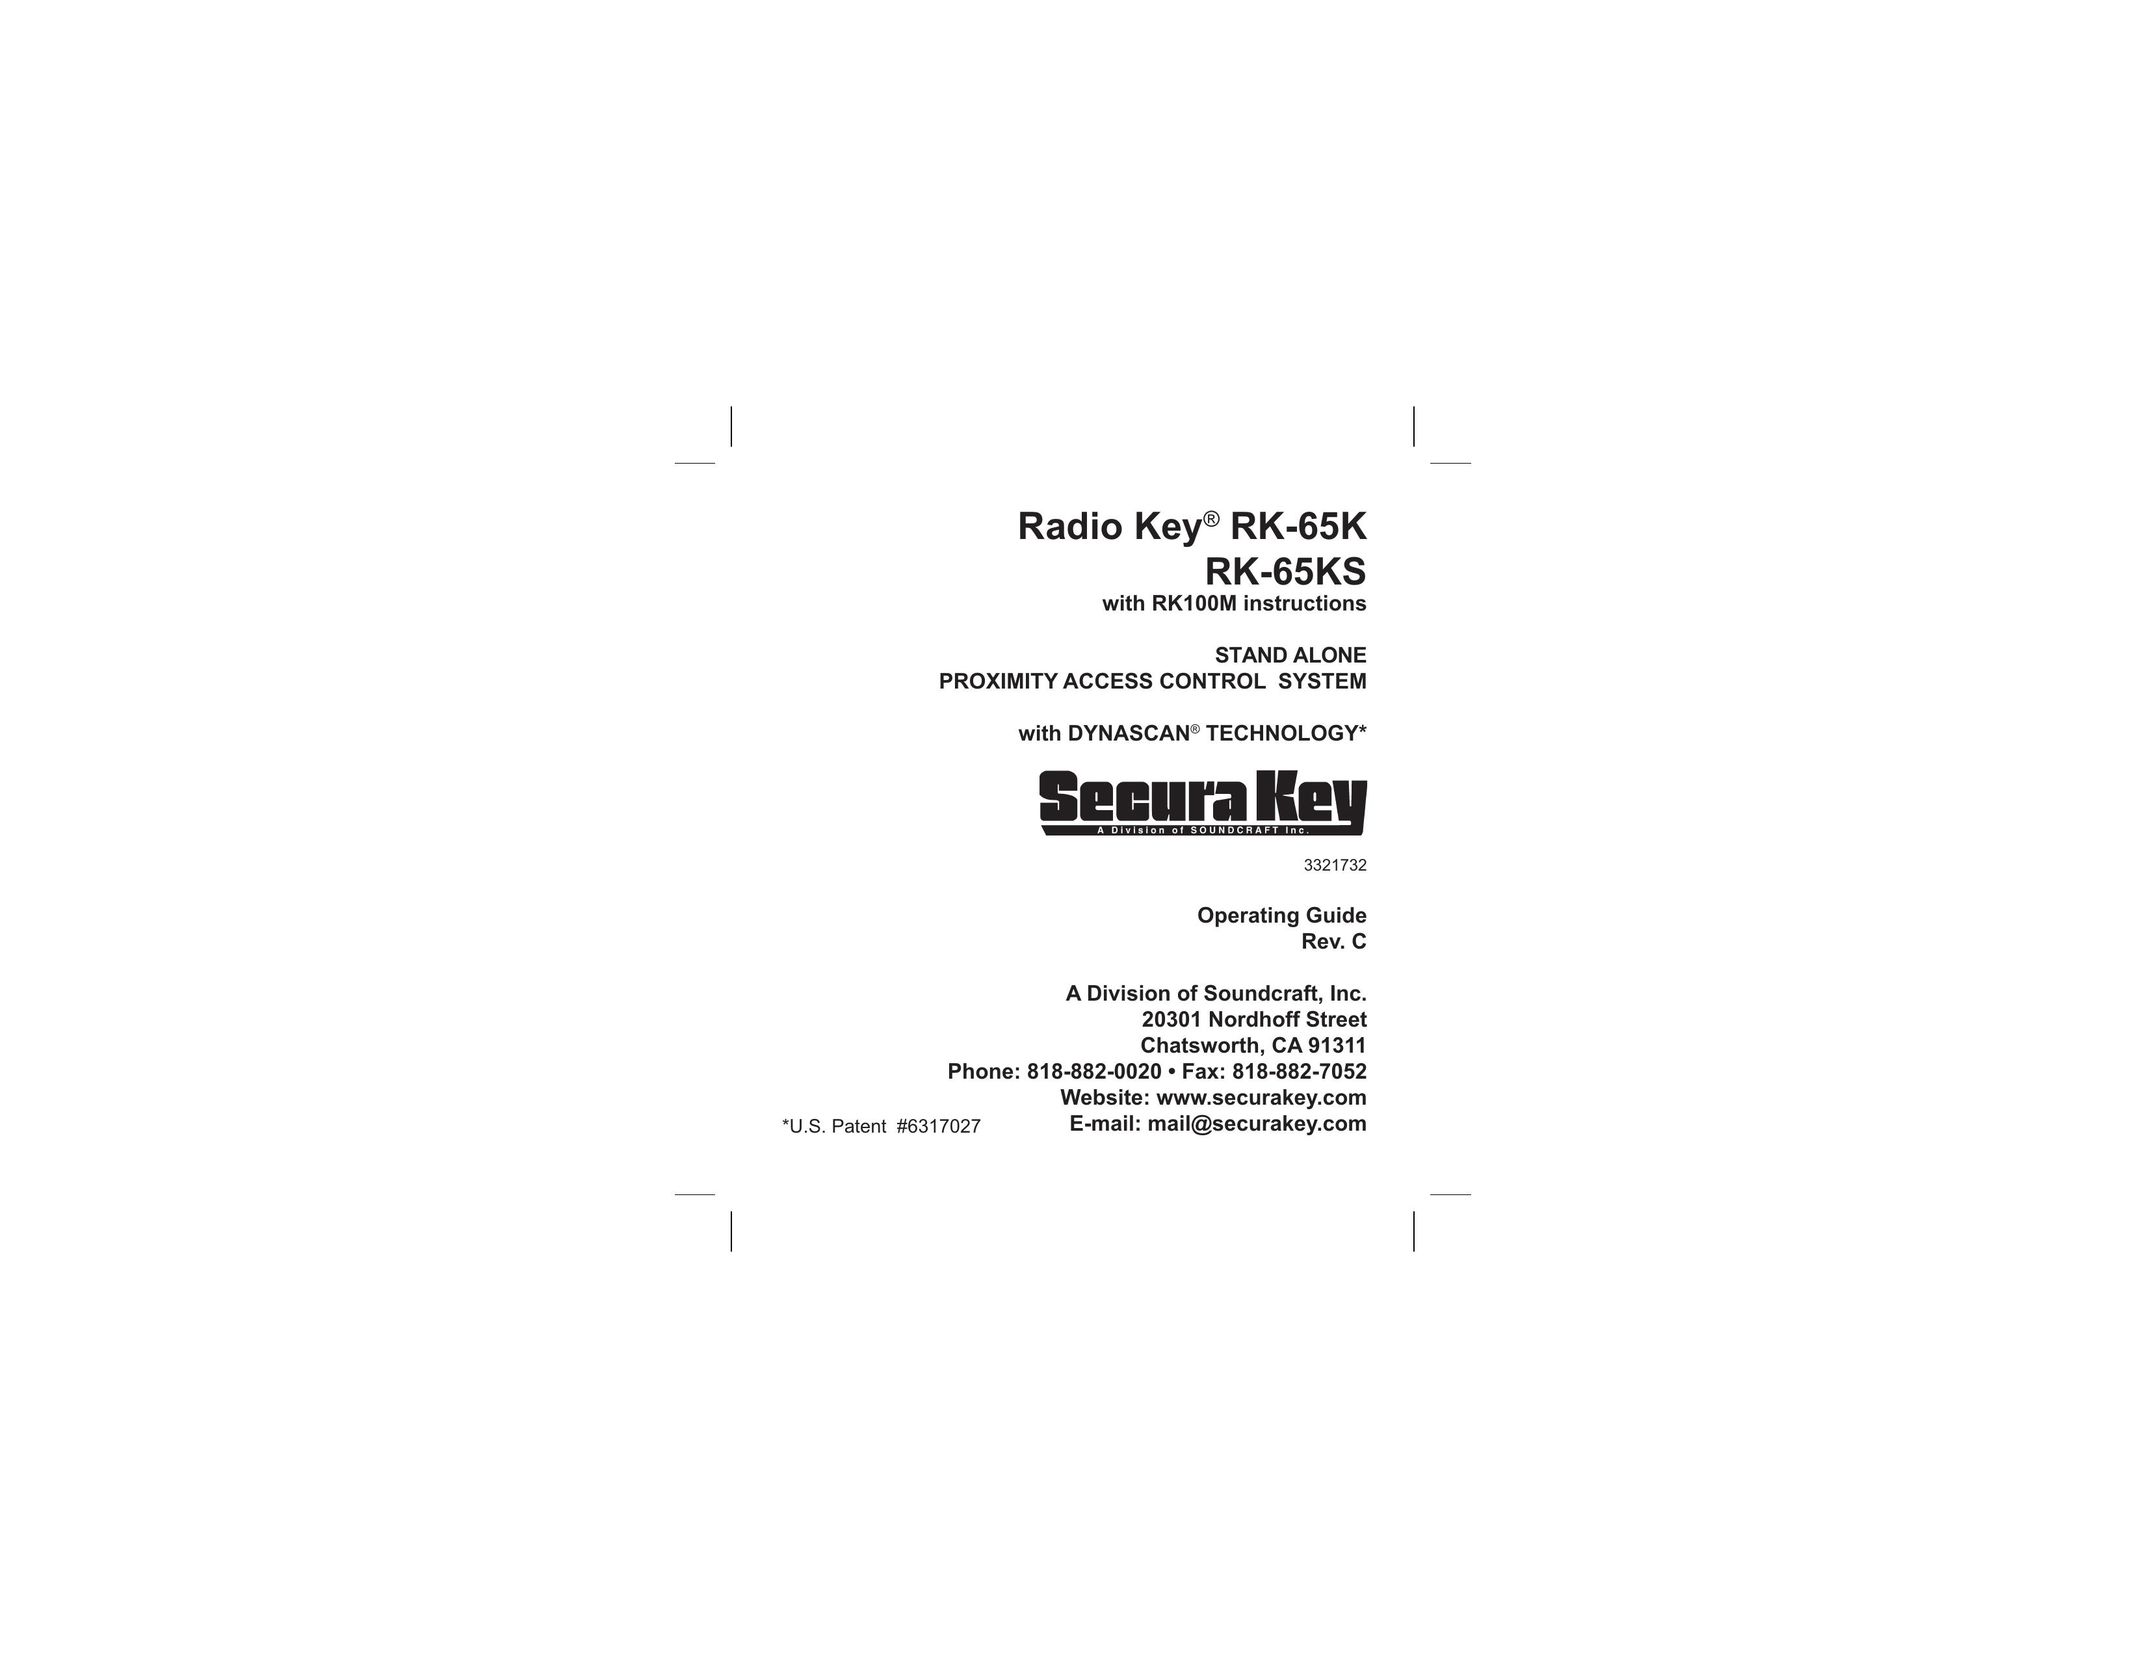 SoundCraft RK-65K Home Security System User Manual